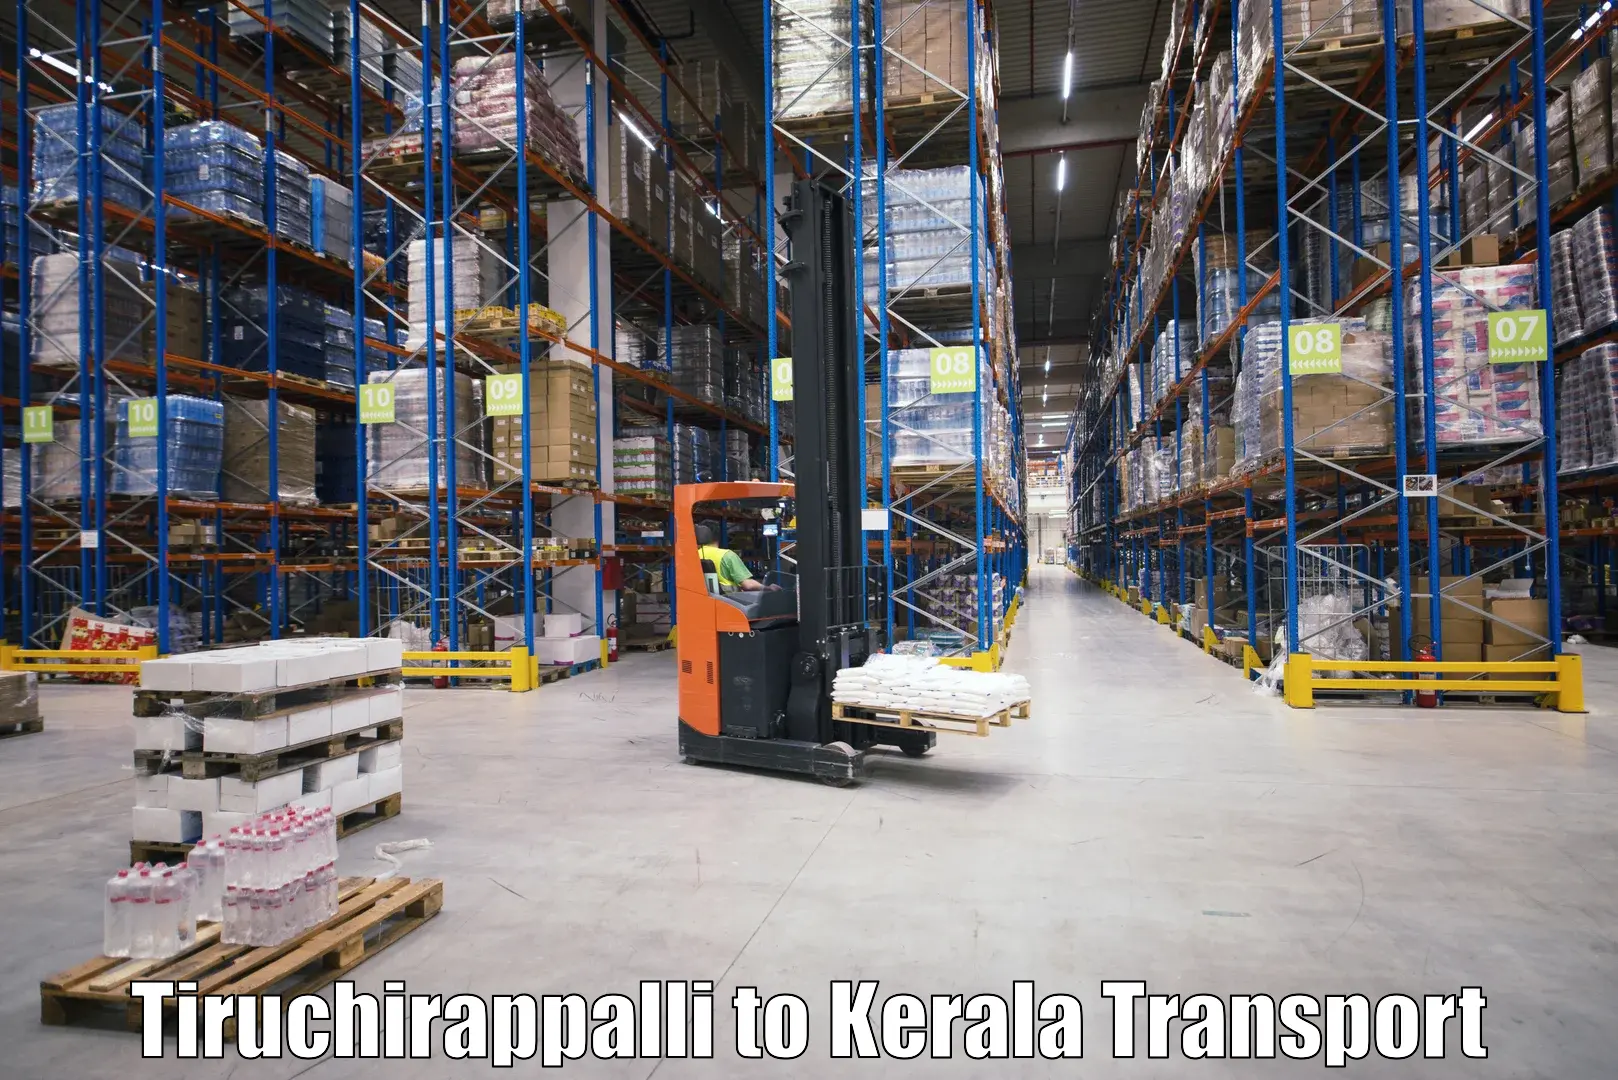 Daily transport service Tiruchirappalli to Perumbavoor